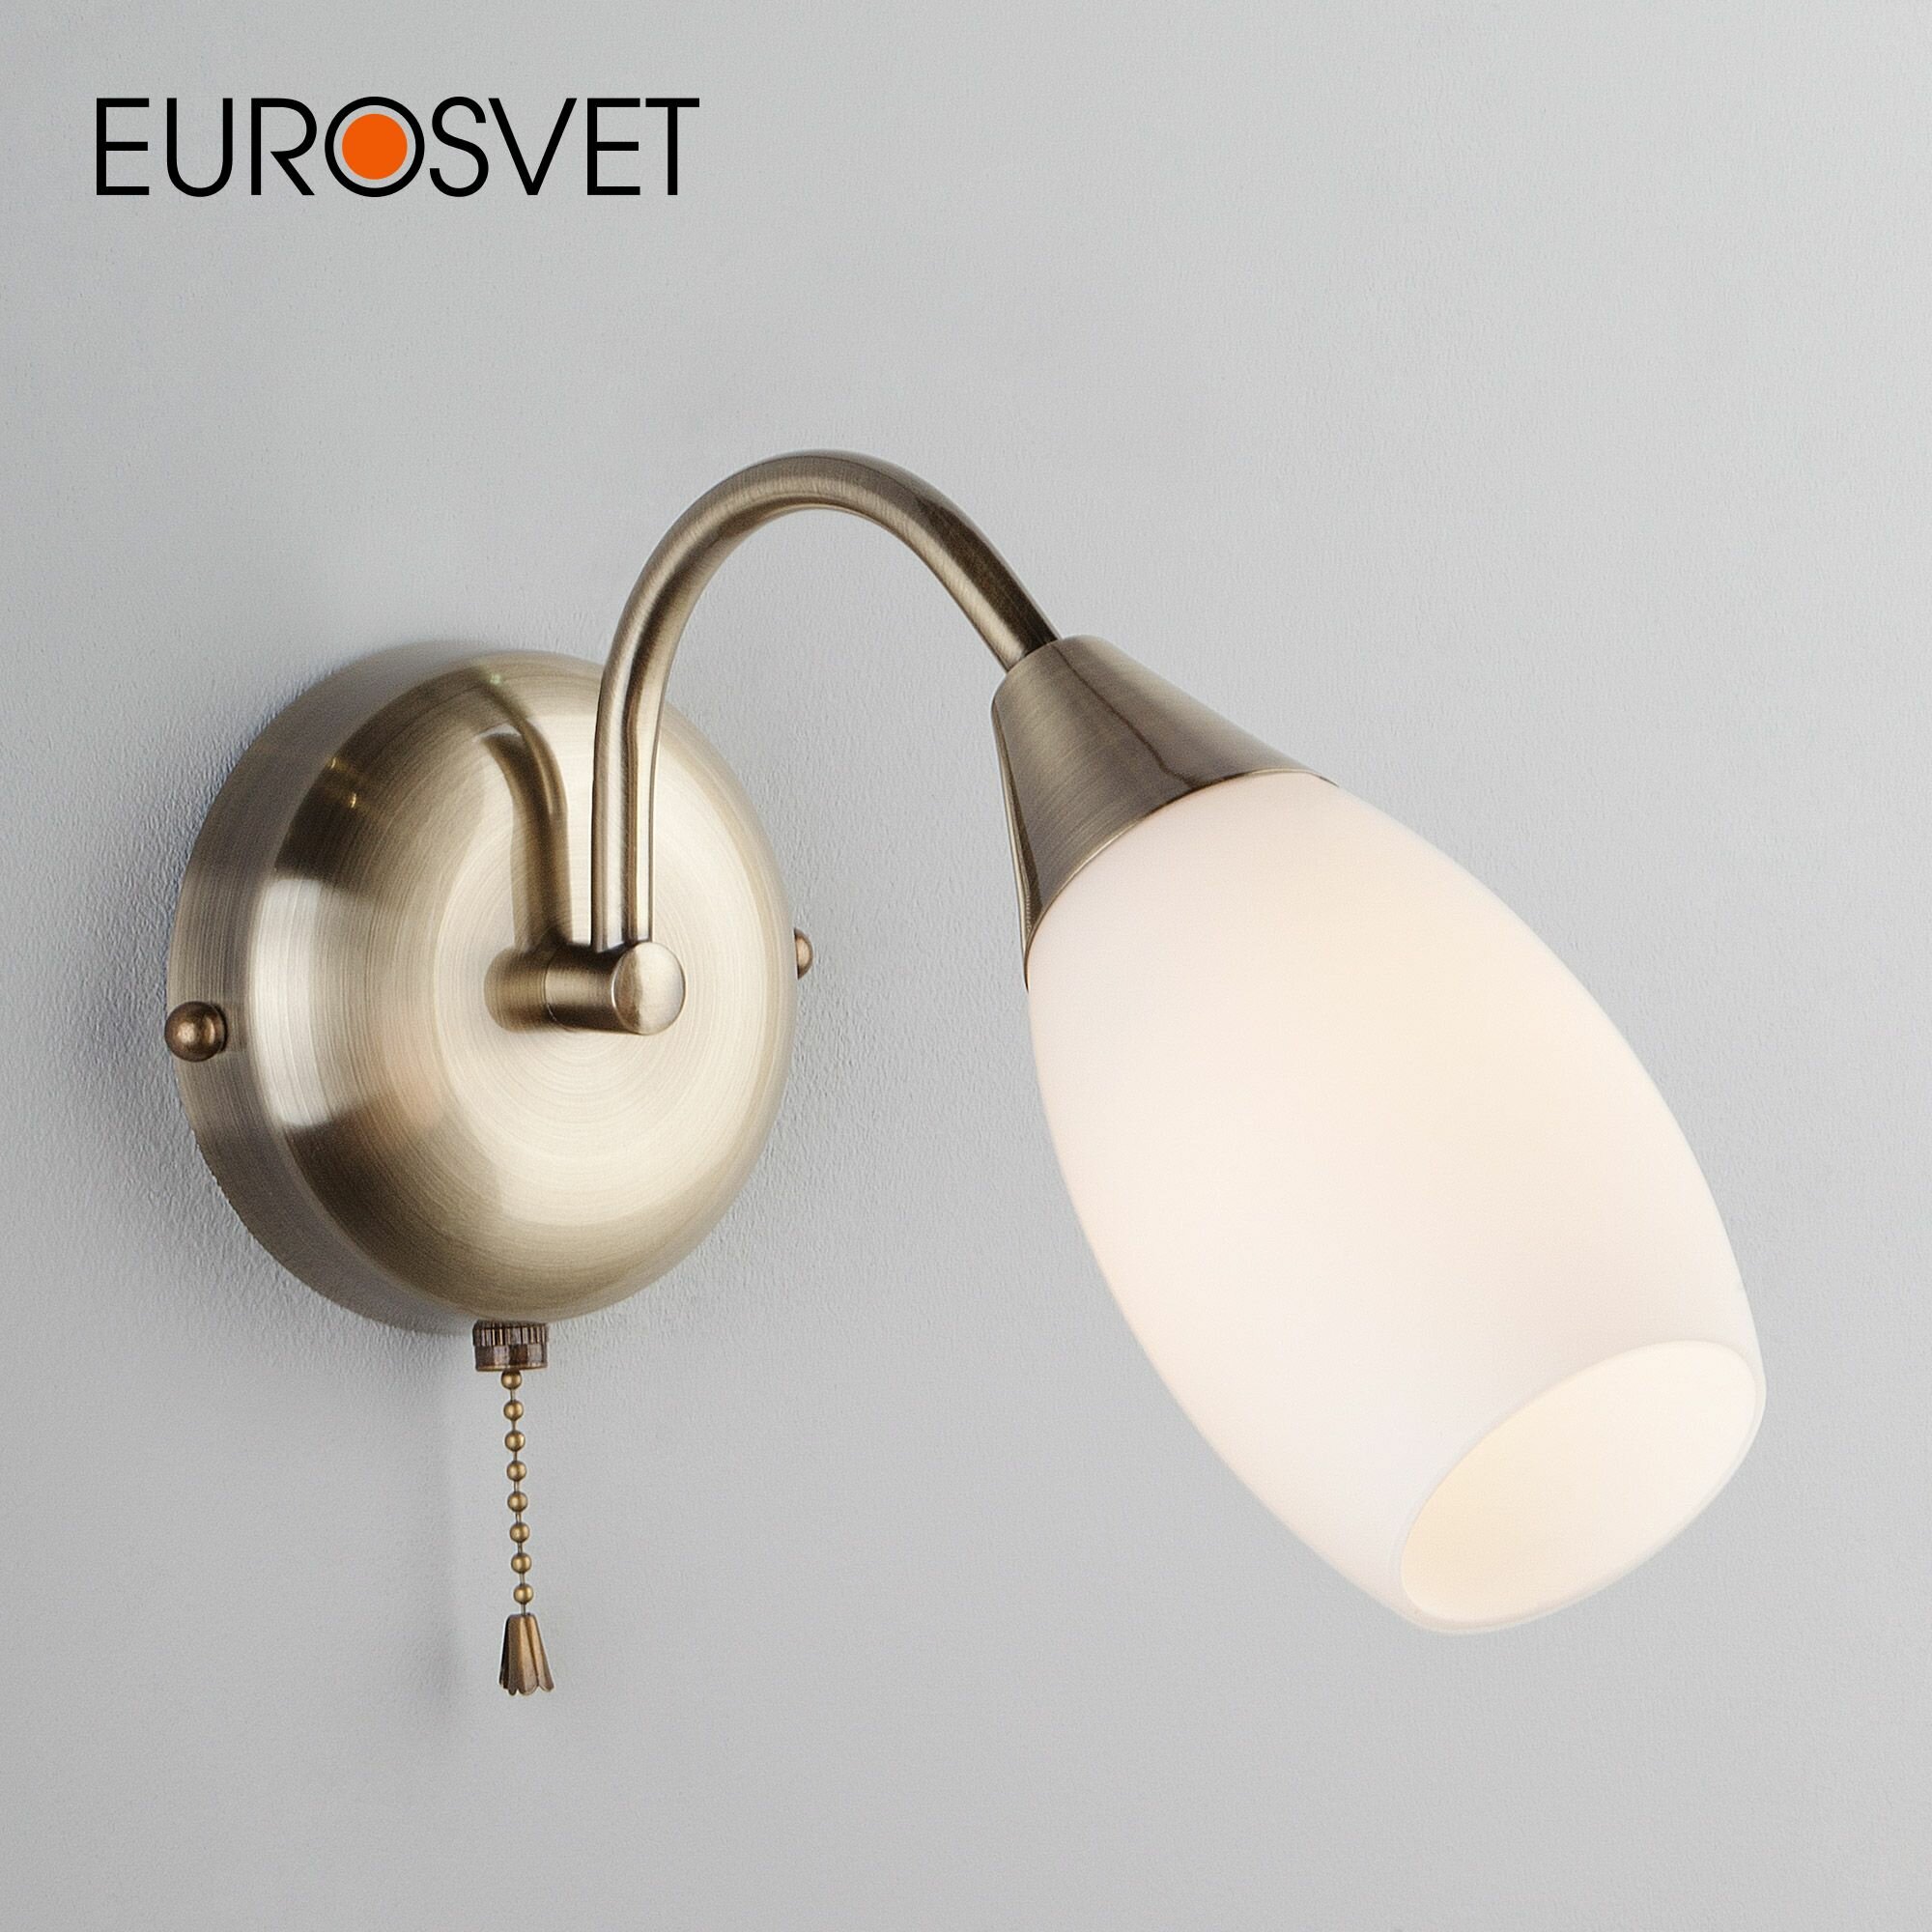 Бра / Настенный светильник со стеклянным плафоном Eurosvet Ginevra 30280/1 античная бронза